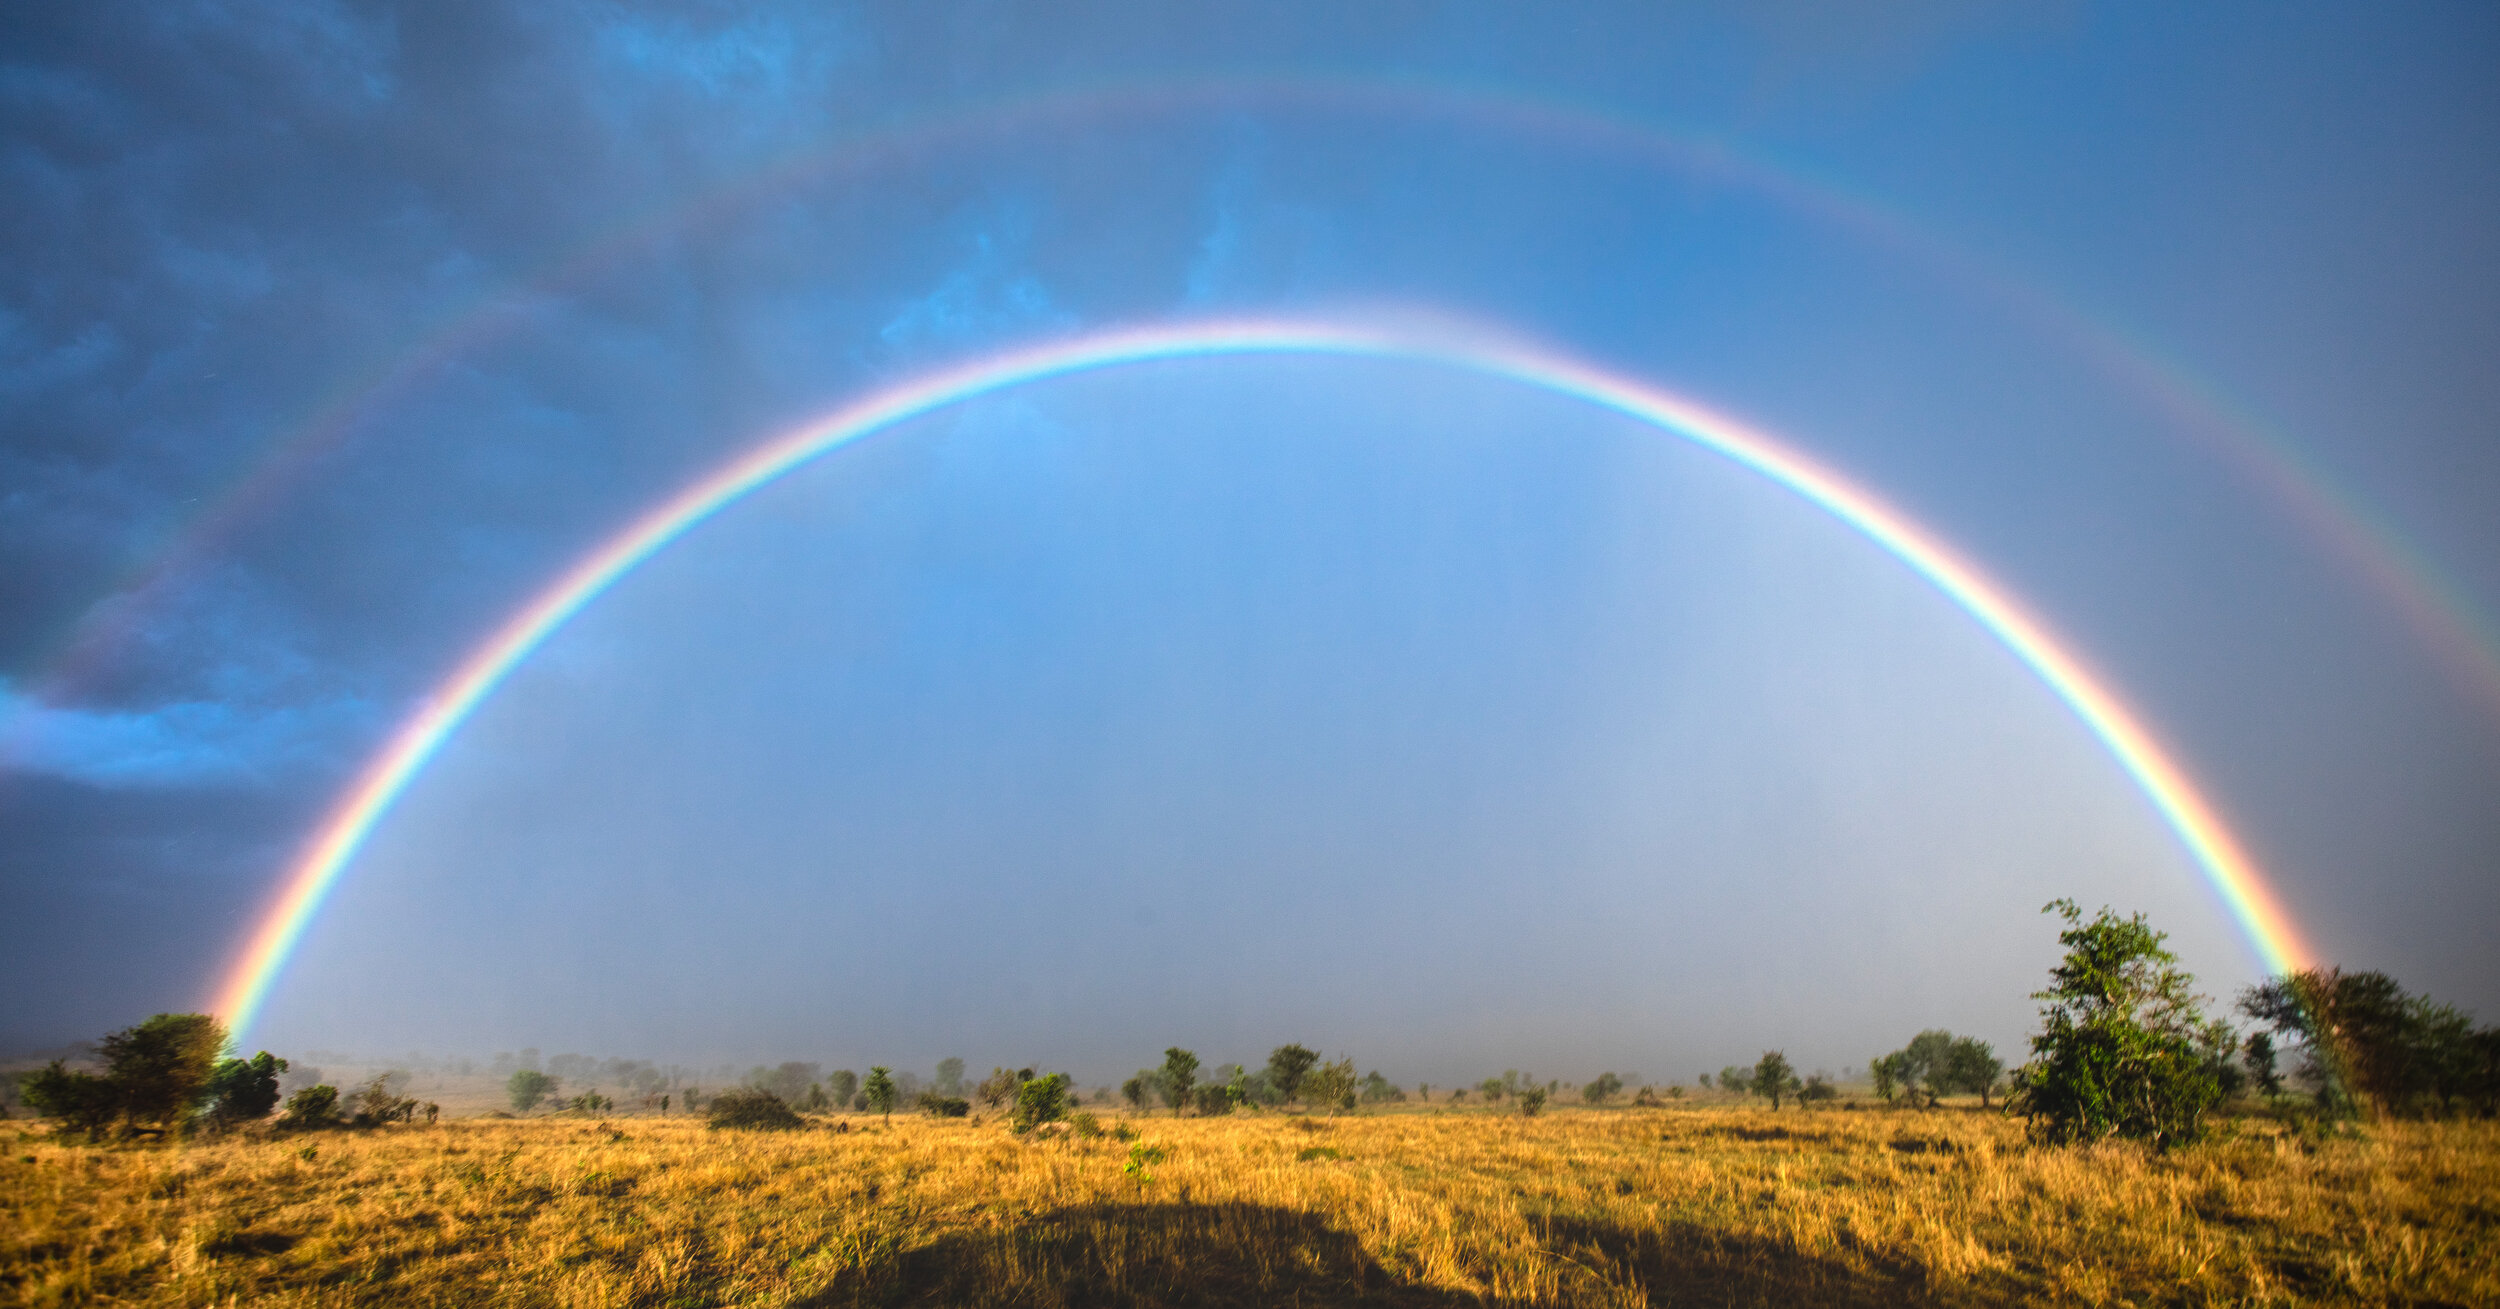 CDR_09282019_Tanzania_1853_rainbow.jpg